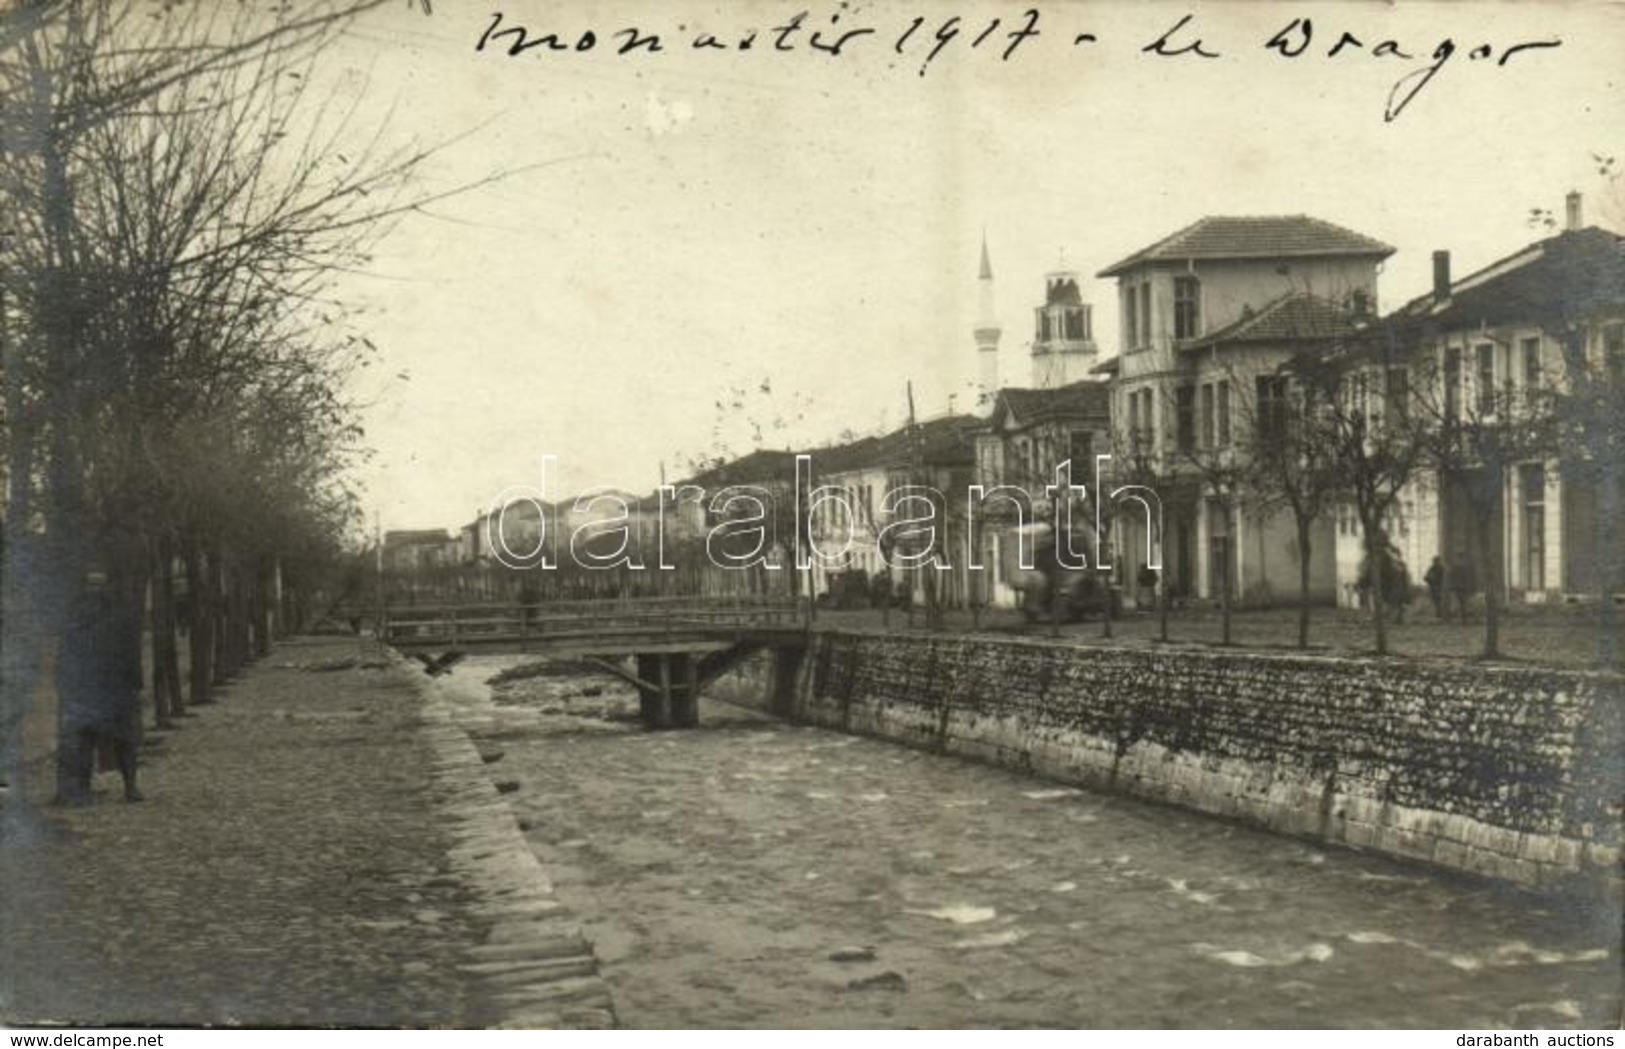 * T2 1917 Bitola, Monastir; Le Dragor / River - Ohne Zuordnung